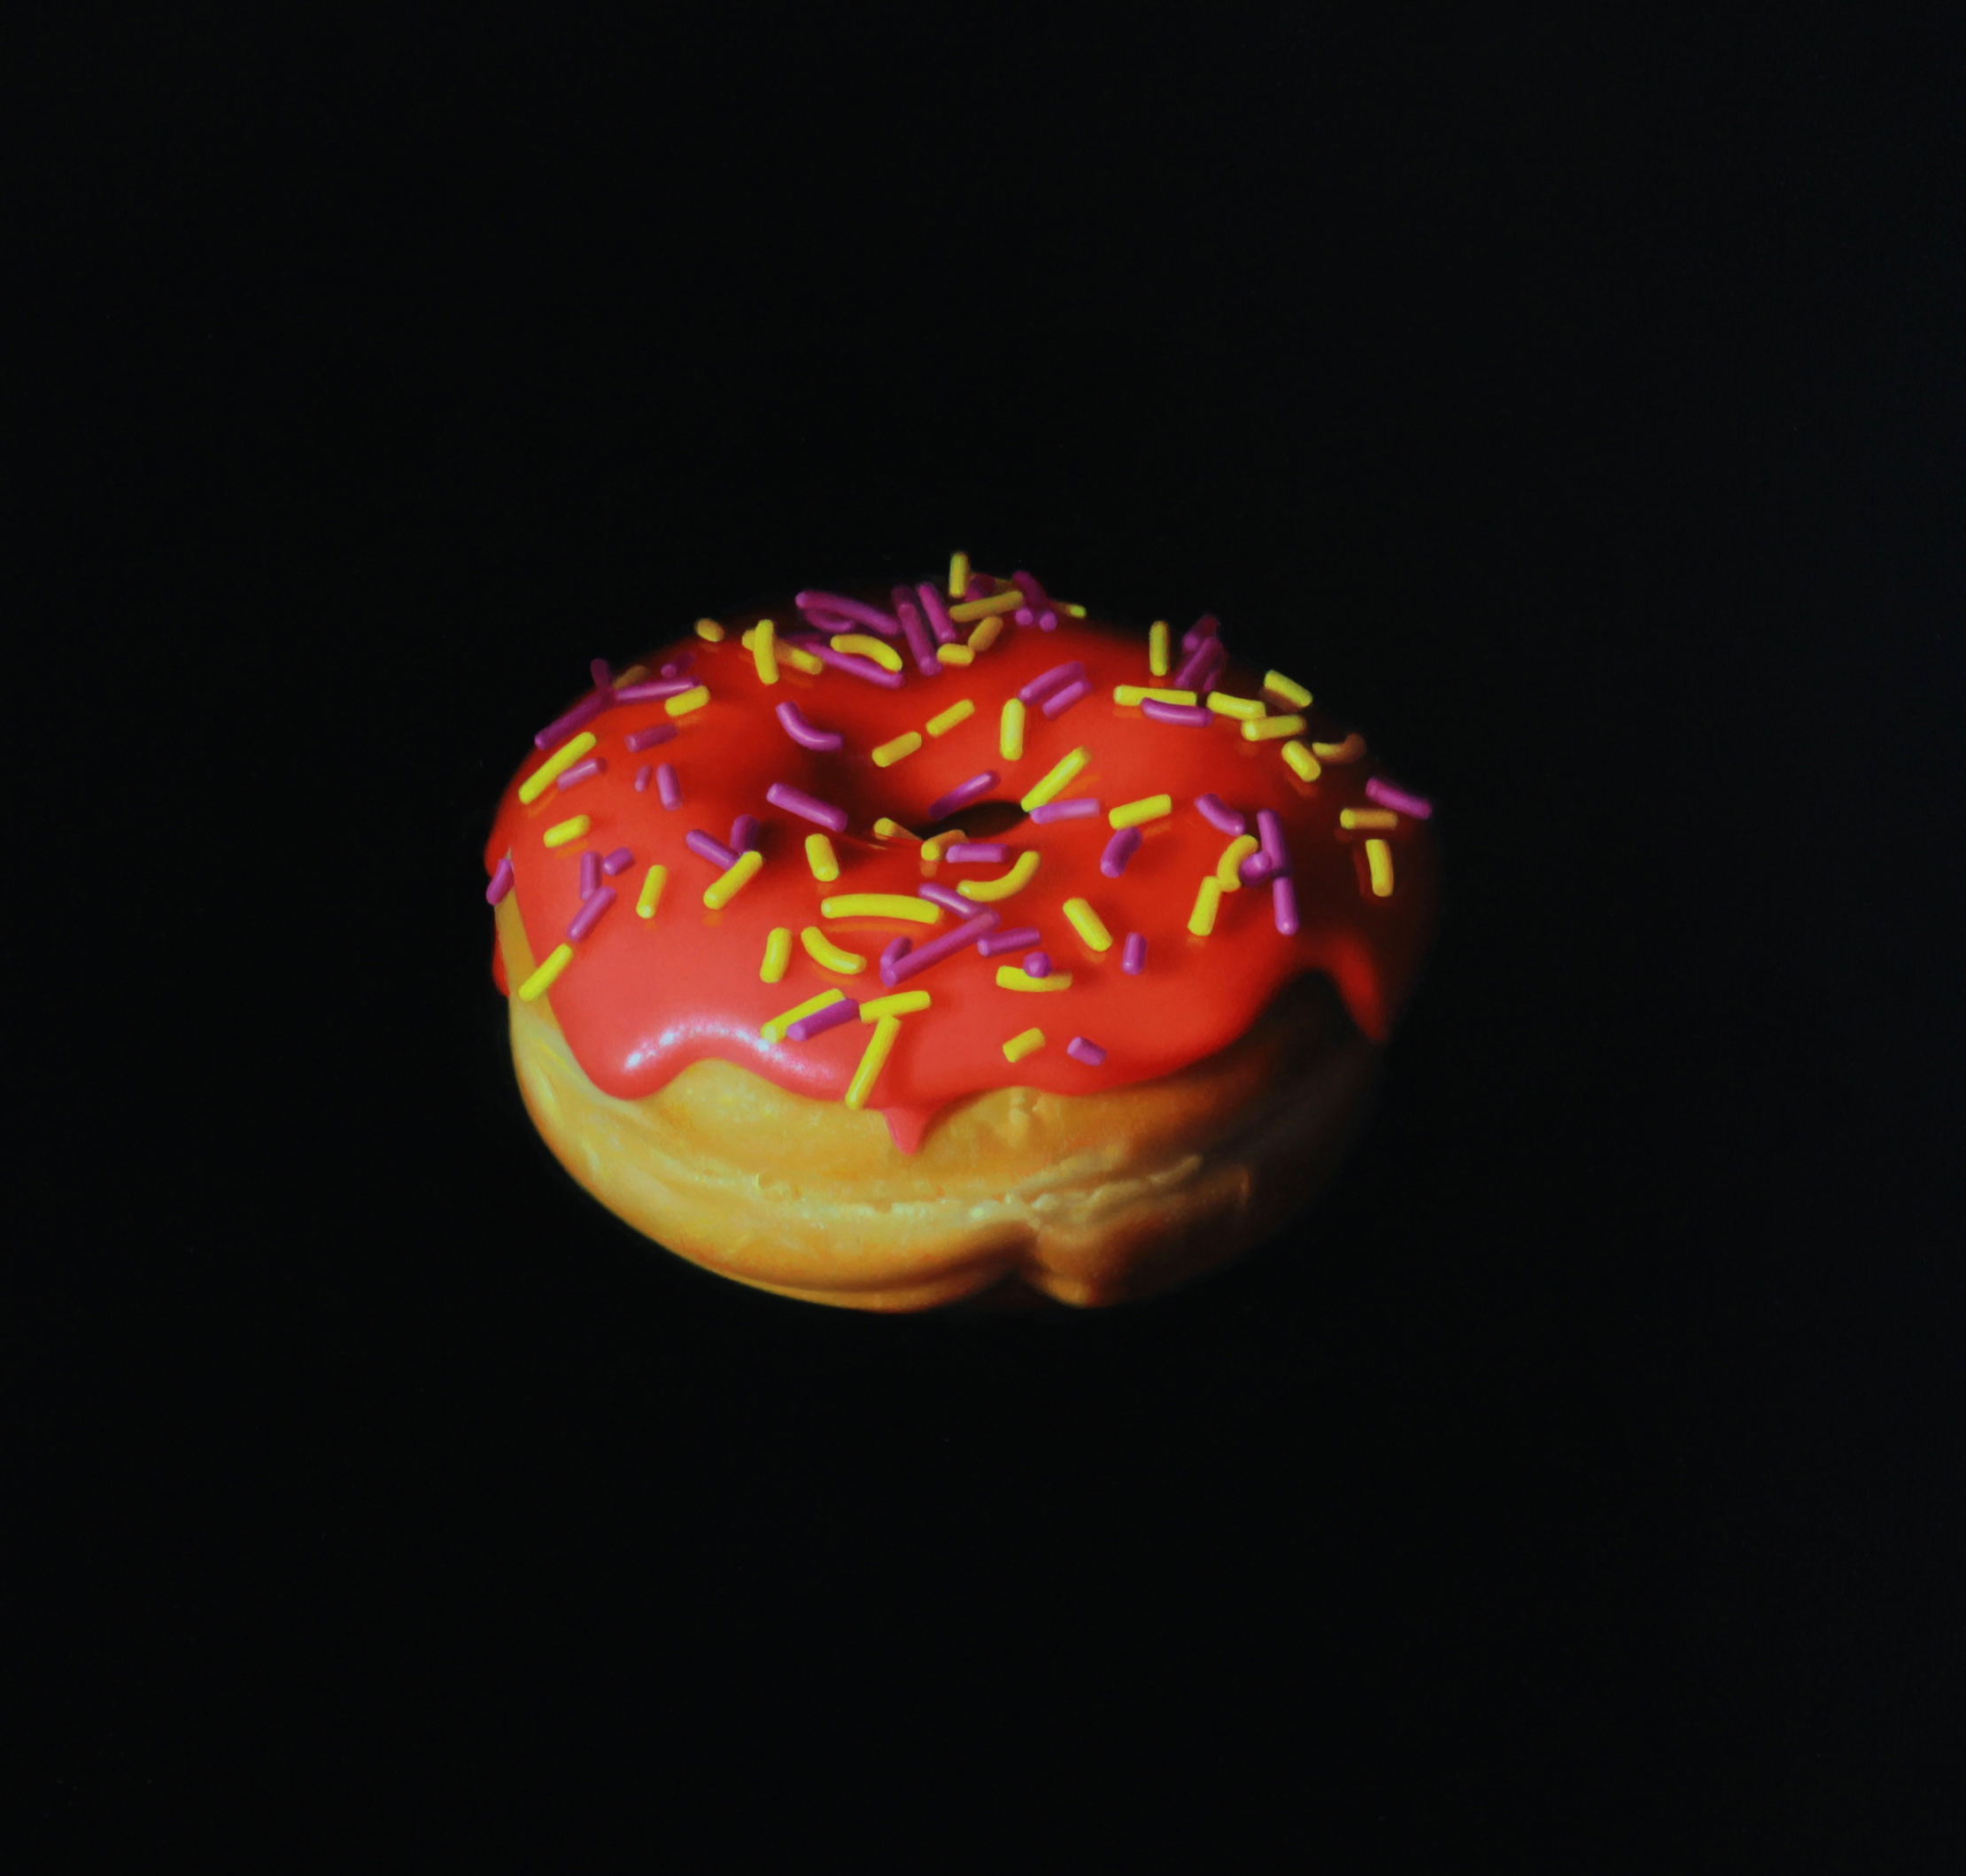  Red Sprinkle Donut.&nbsp;Oil on panel. 